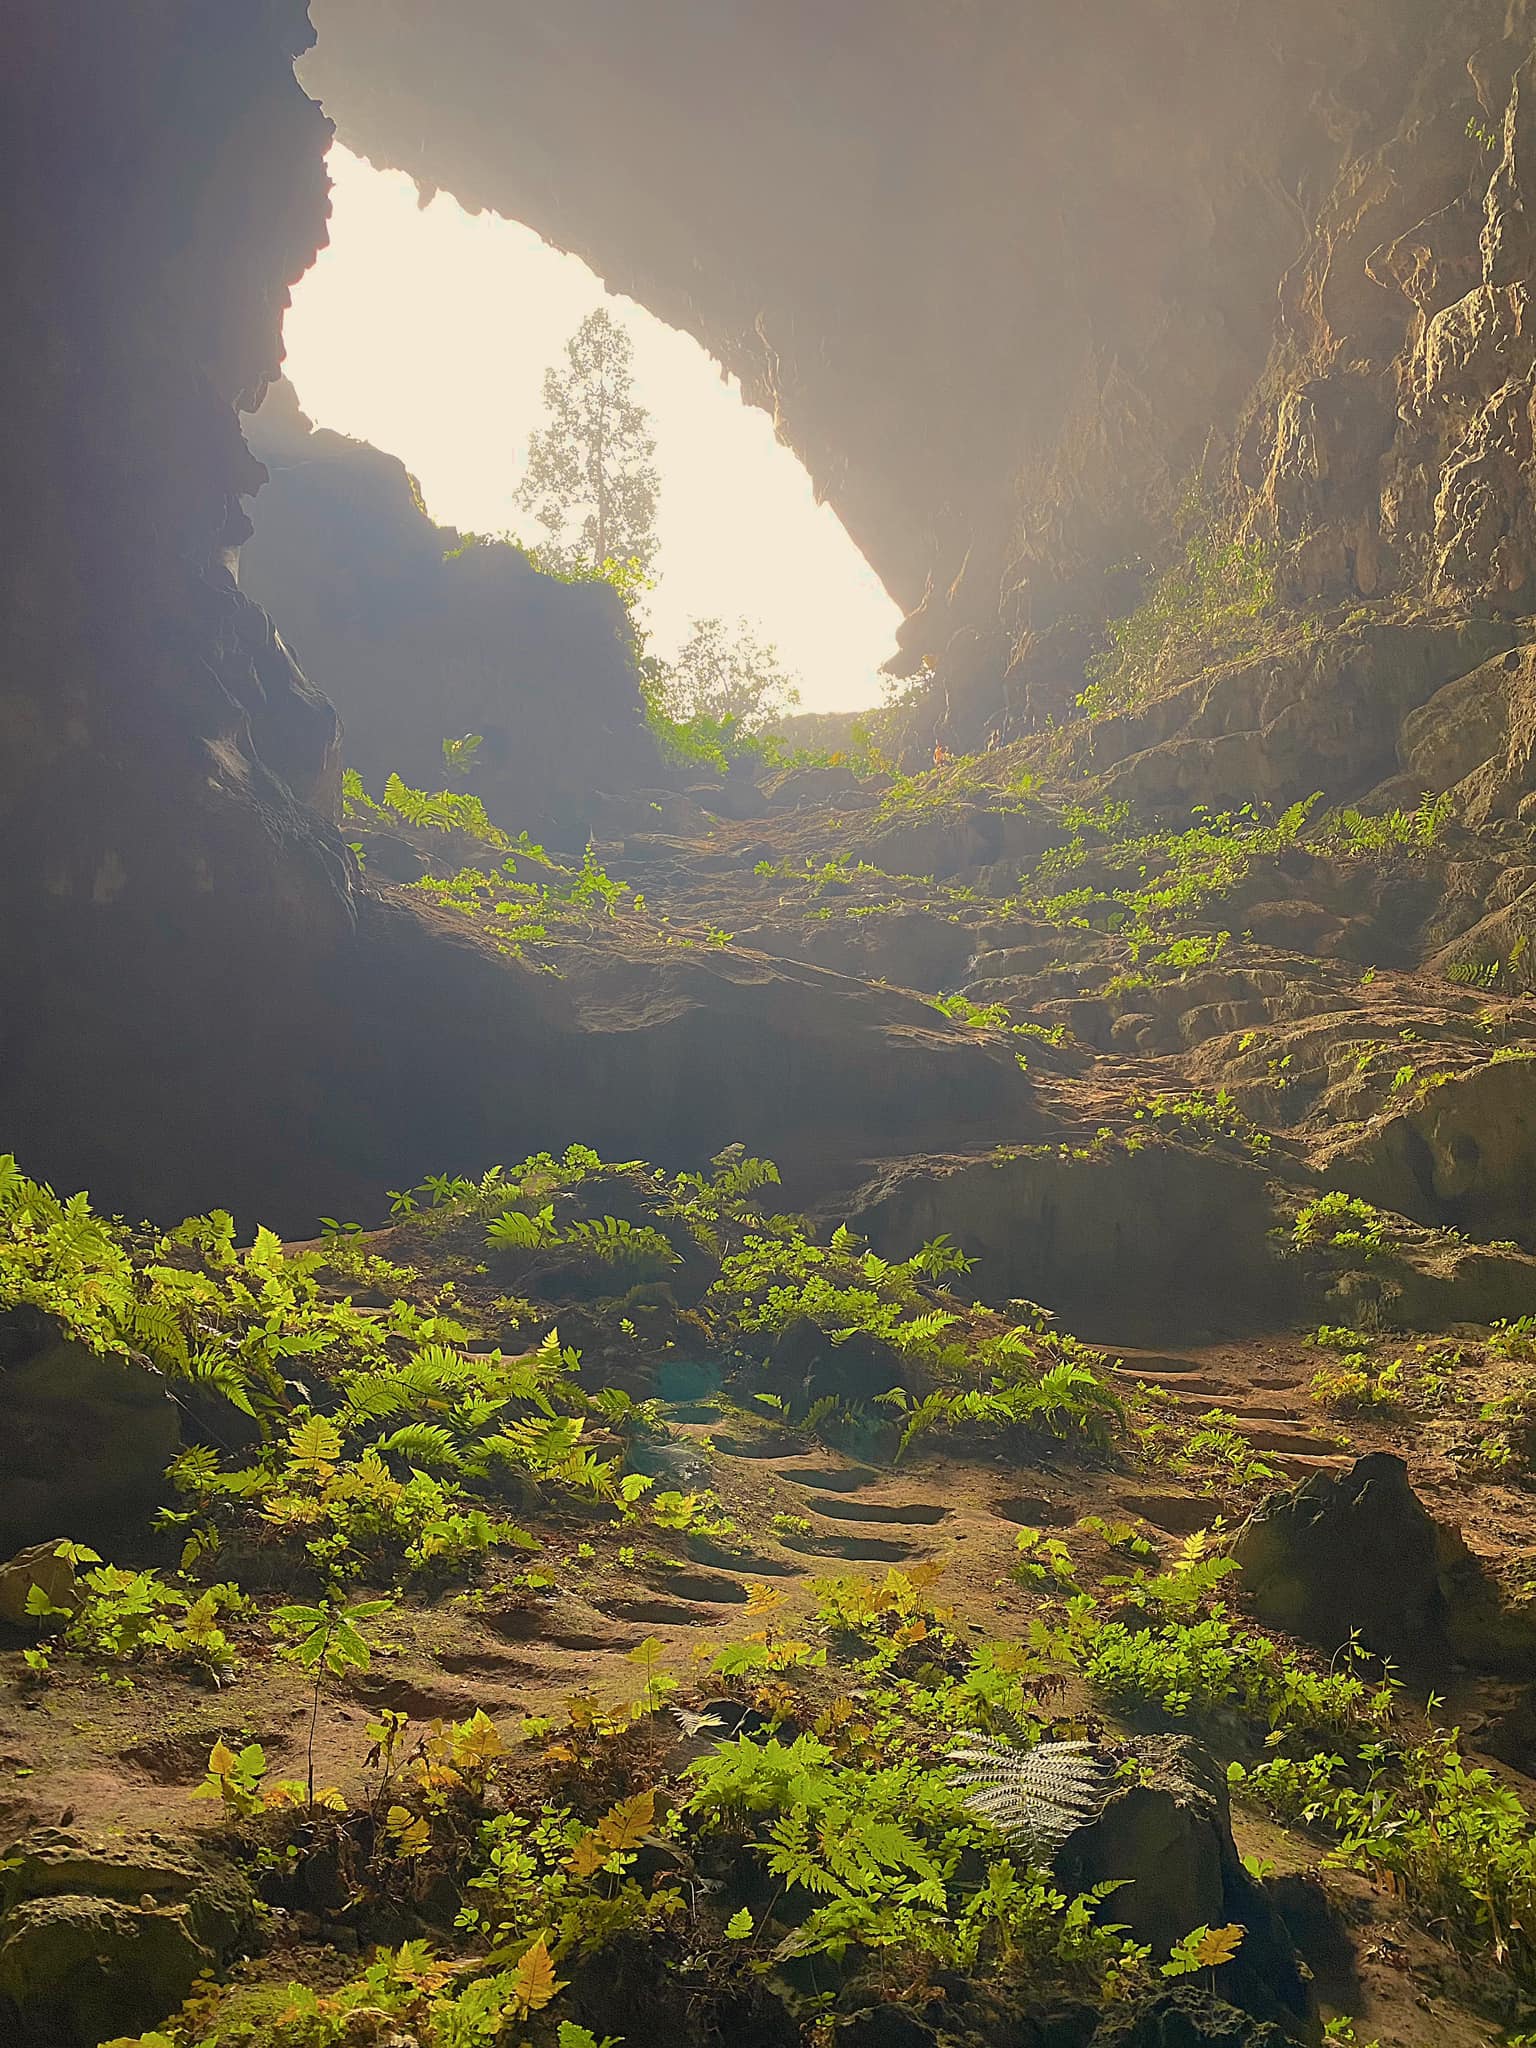 Phát hiện hang động hoang sơ với những khối núi đá vôi hàng trăm triệu tuổi, cách Hà Nội chỉ hơn 200km- Ảnh 11.